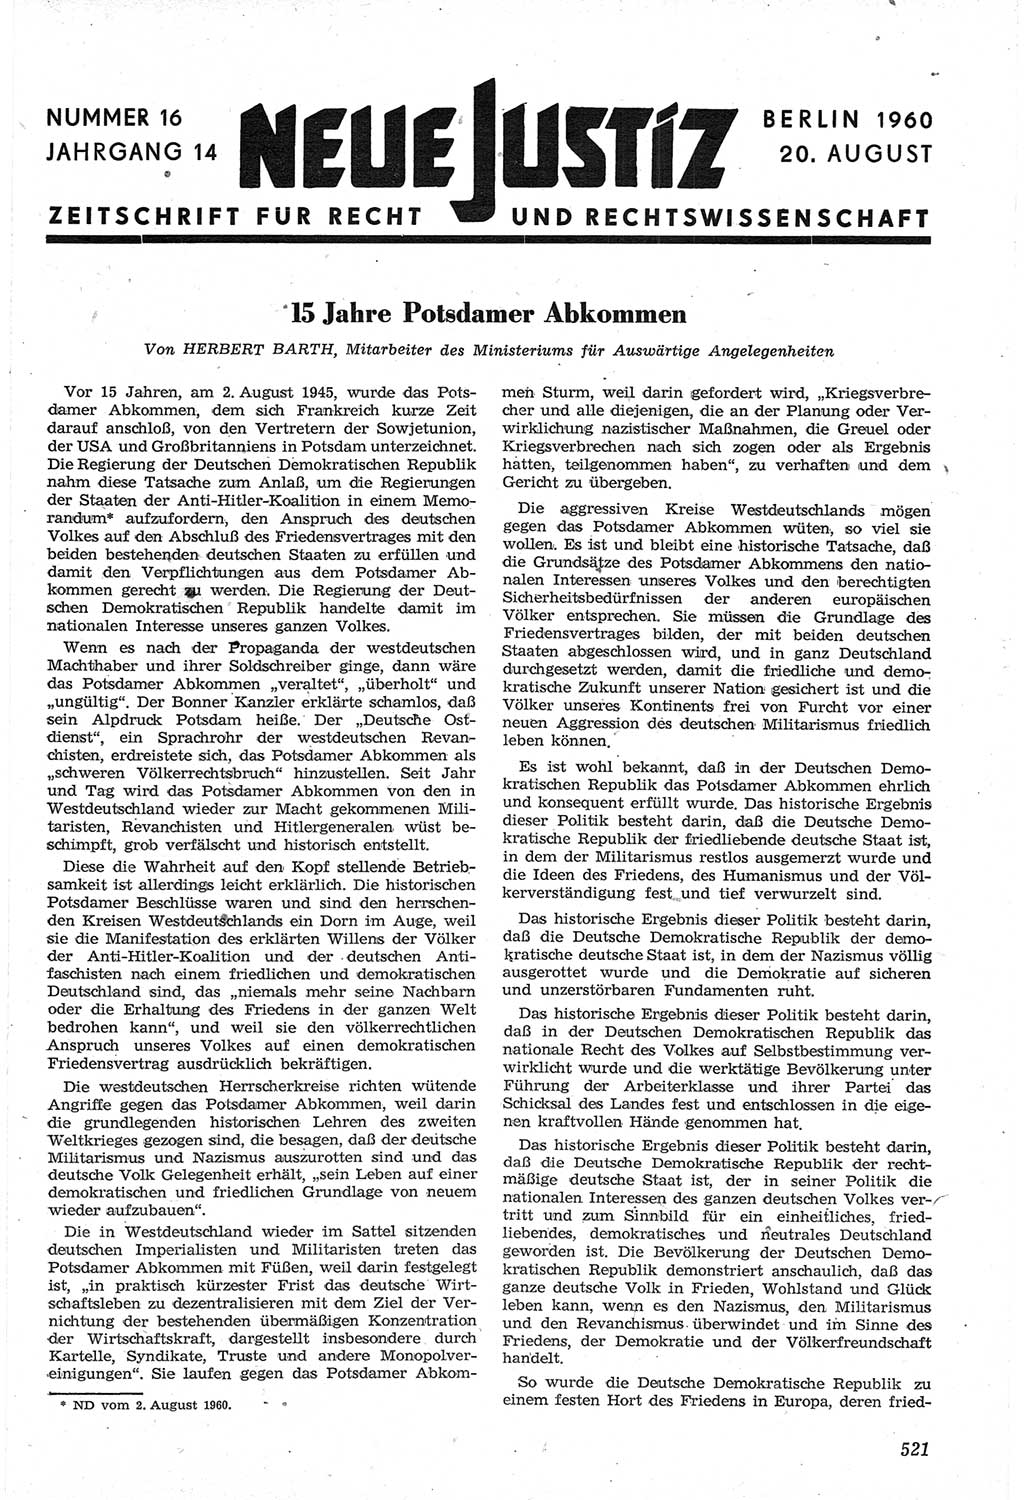 Neue Justiz (NJ), Zeitschrift für Recht und Rechtswissenschaft [Deutsche Demokratische Republik (DDR)], 14. Jahrgang 1960, Seite 521 (NJ DDR 1960, S. 521)